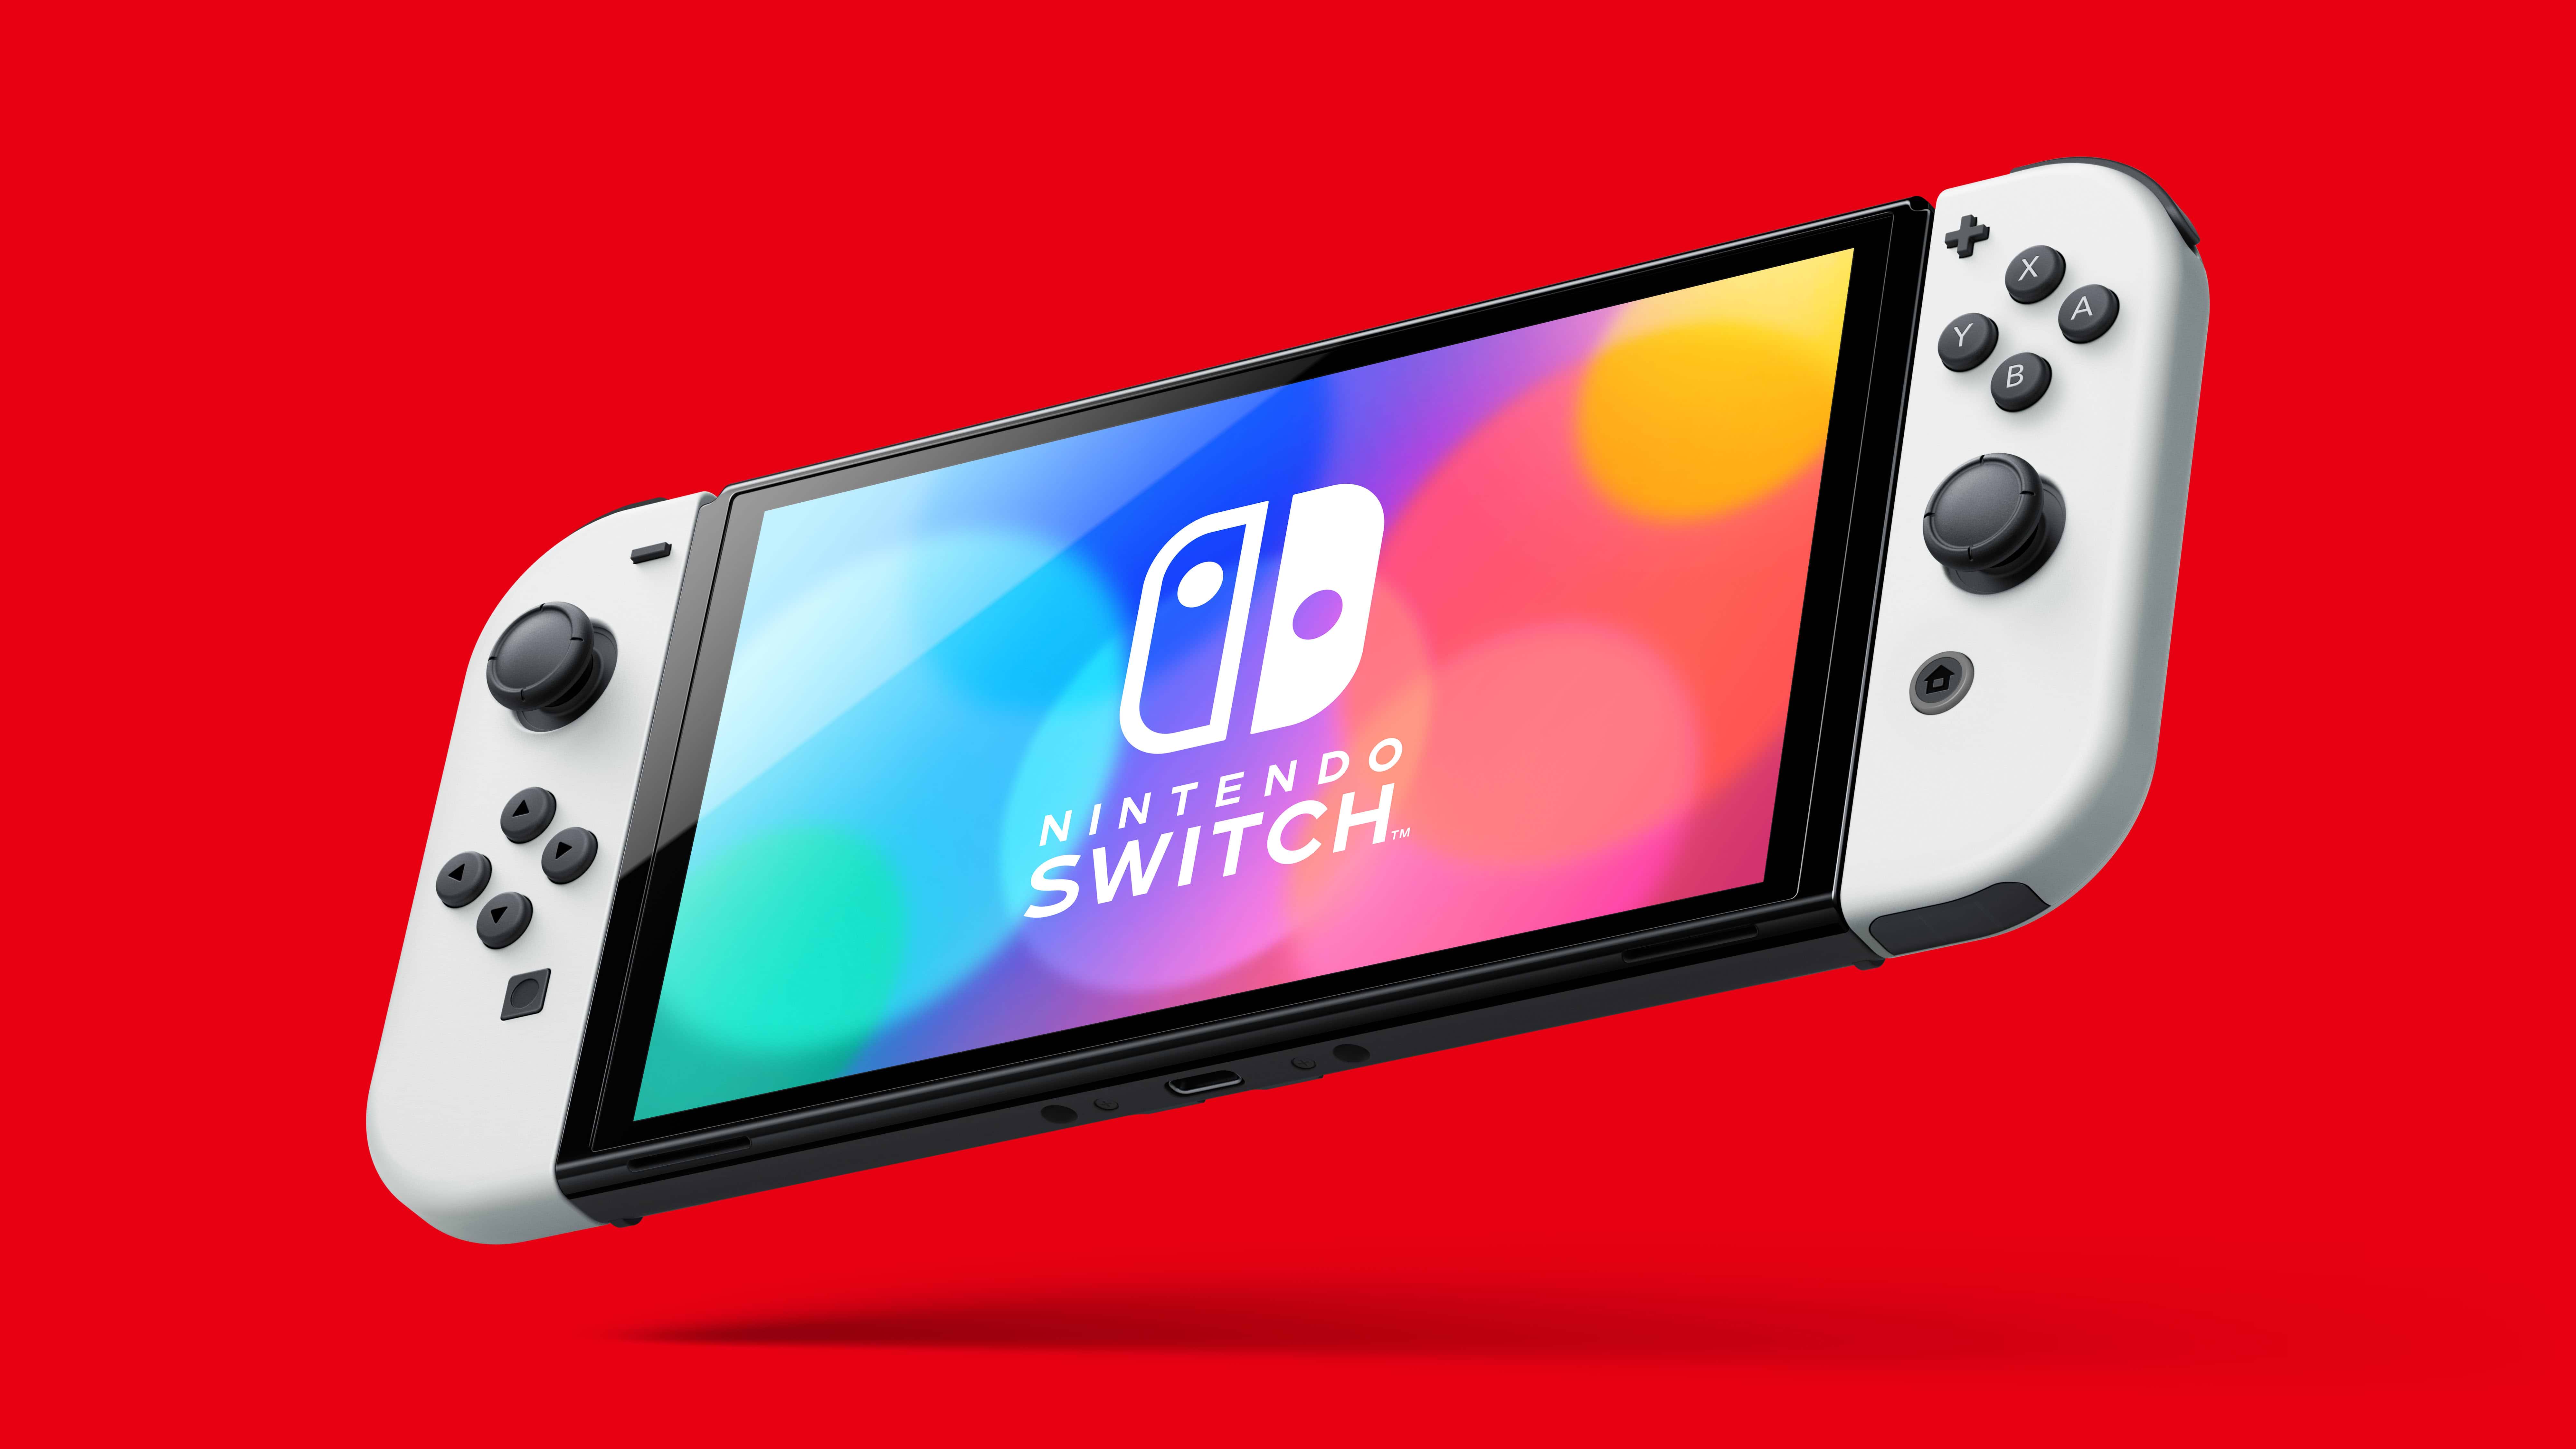 באנדל קונסולת Nintendo Switch OLED הכולל משחק Mario Kart 8 Deluxe ומנוי Nintendo Switch Online ל-3 חודשים - צבע כחול ואדום שנתיים אחריות ע"י היבואן הרשמי